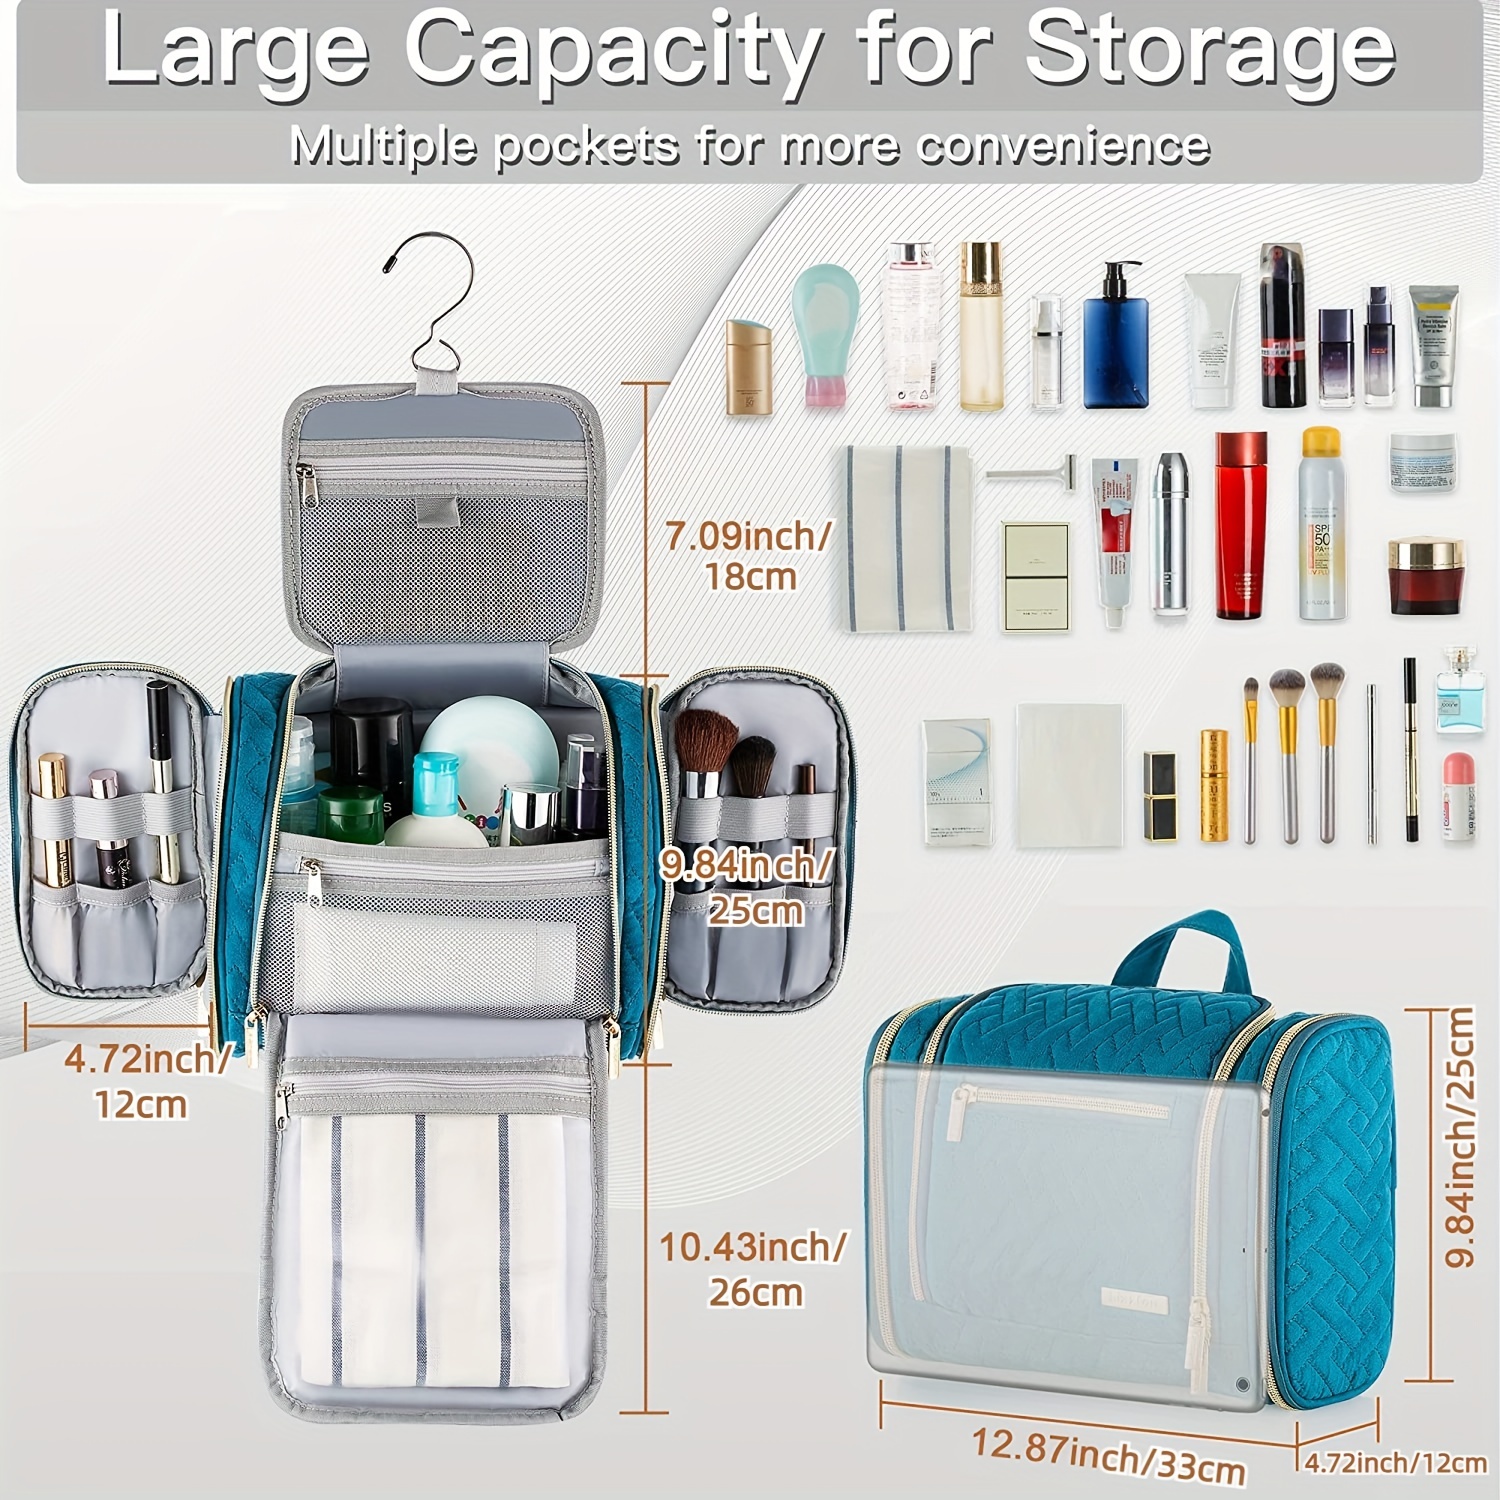 42 Travel Hanging Toiletry Bag - Large Kit Organizer for Men & Women - Spacious